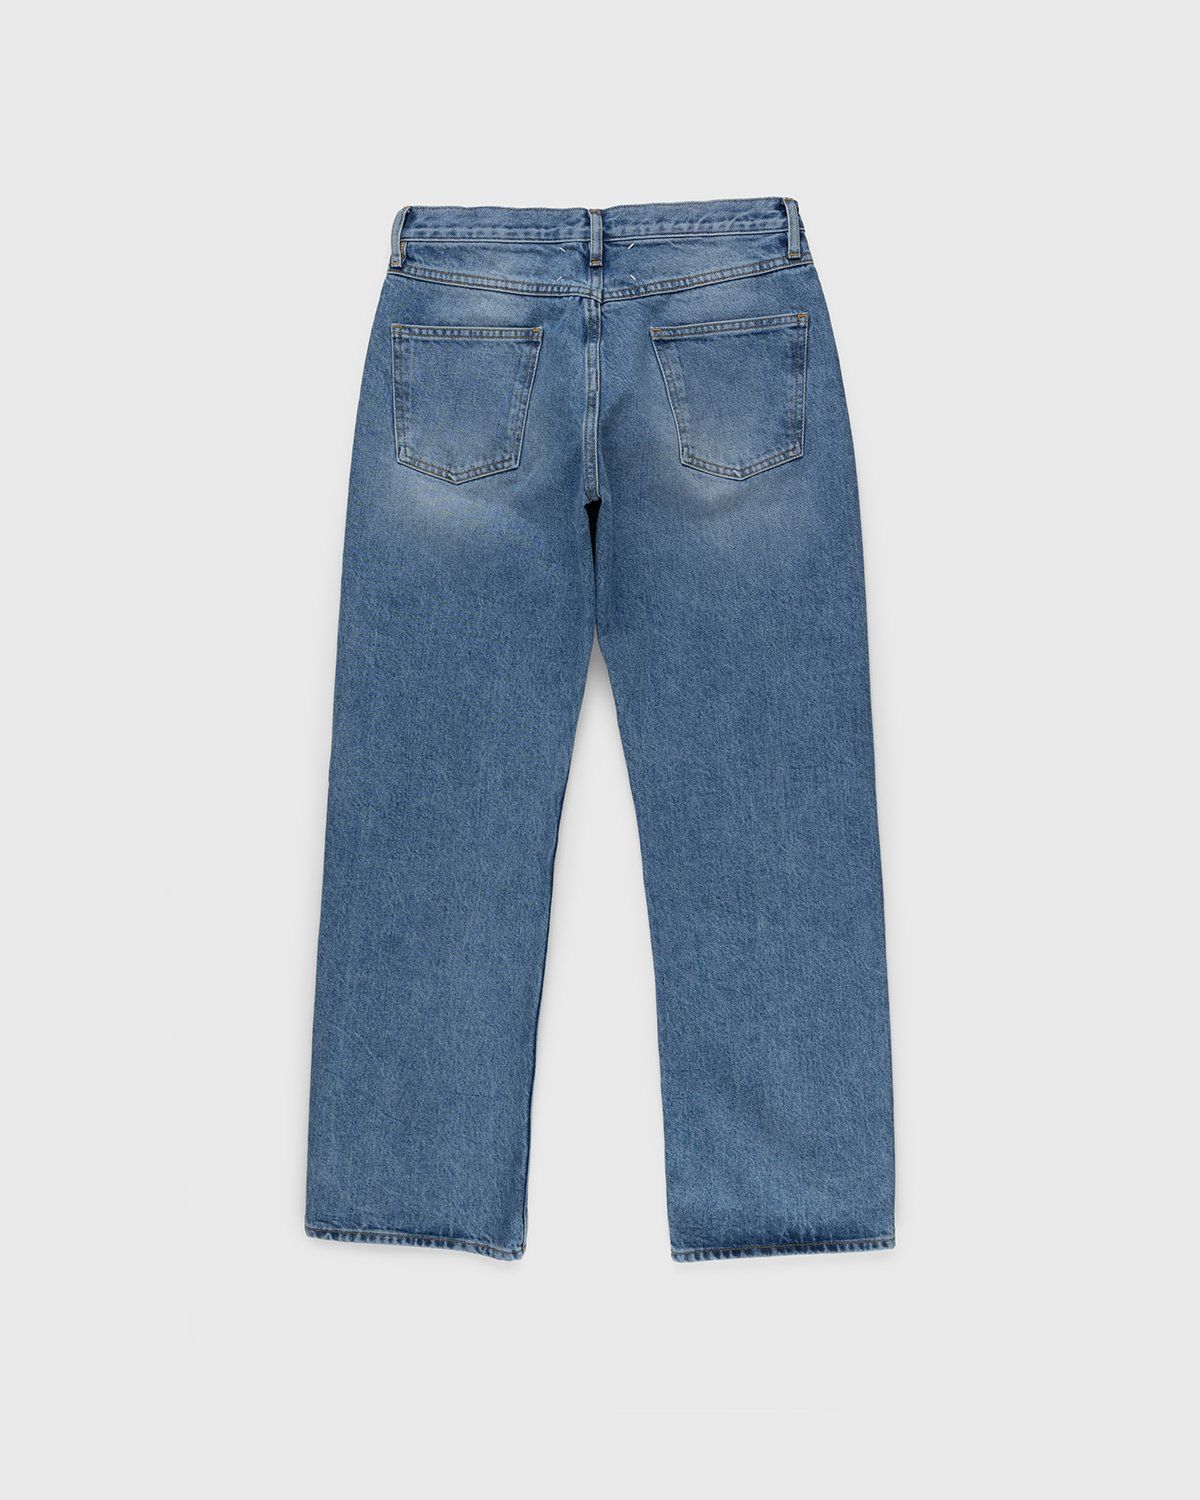 Maison Margiela – Five-Pocket Jeans Blue - Pants - Blue - Image 2